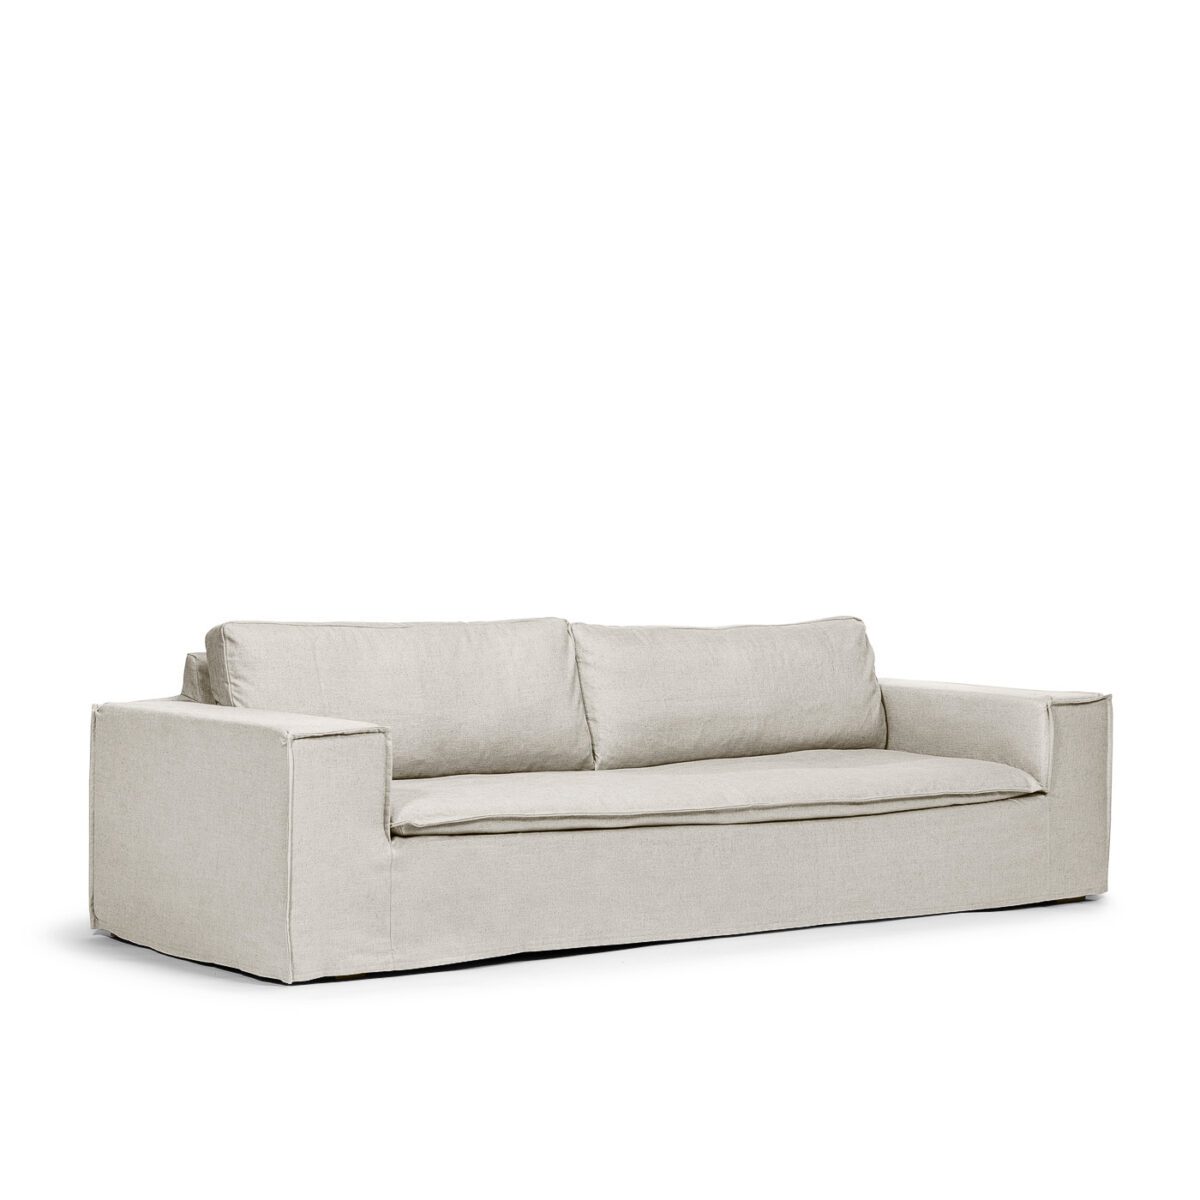 Luca Original 3-Seat Sofa True White